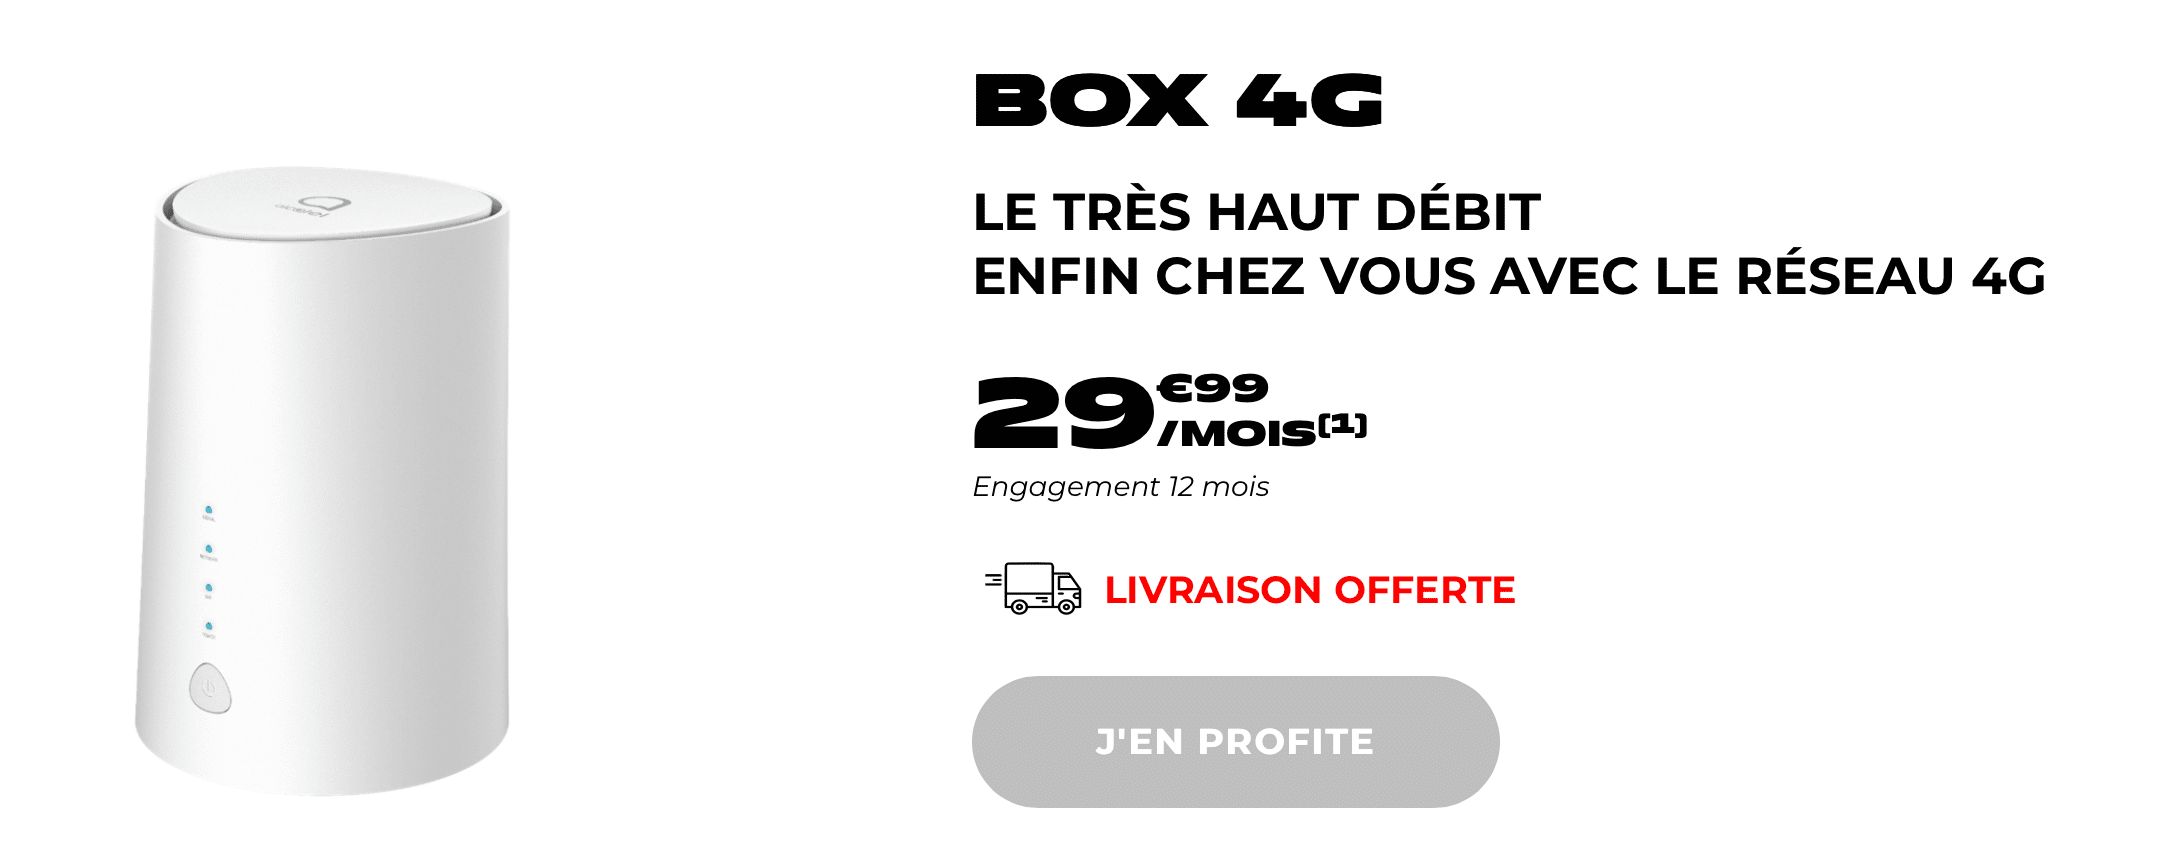 Box 4G NRJ Mobile